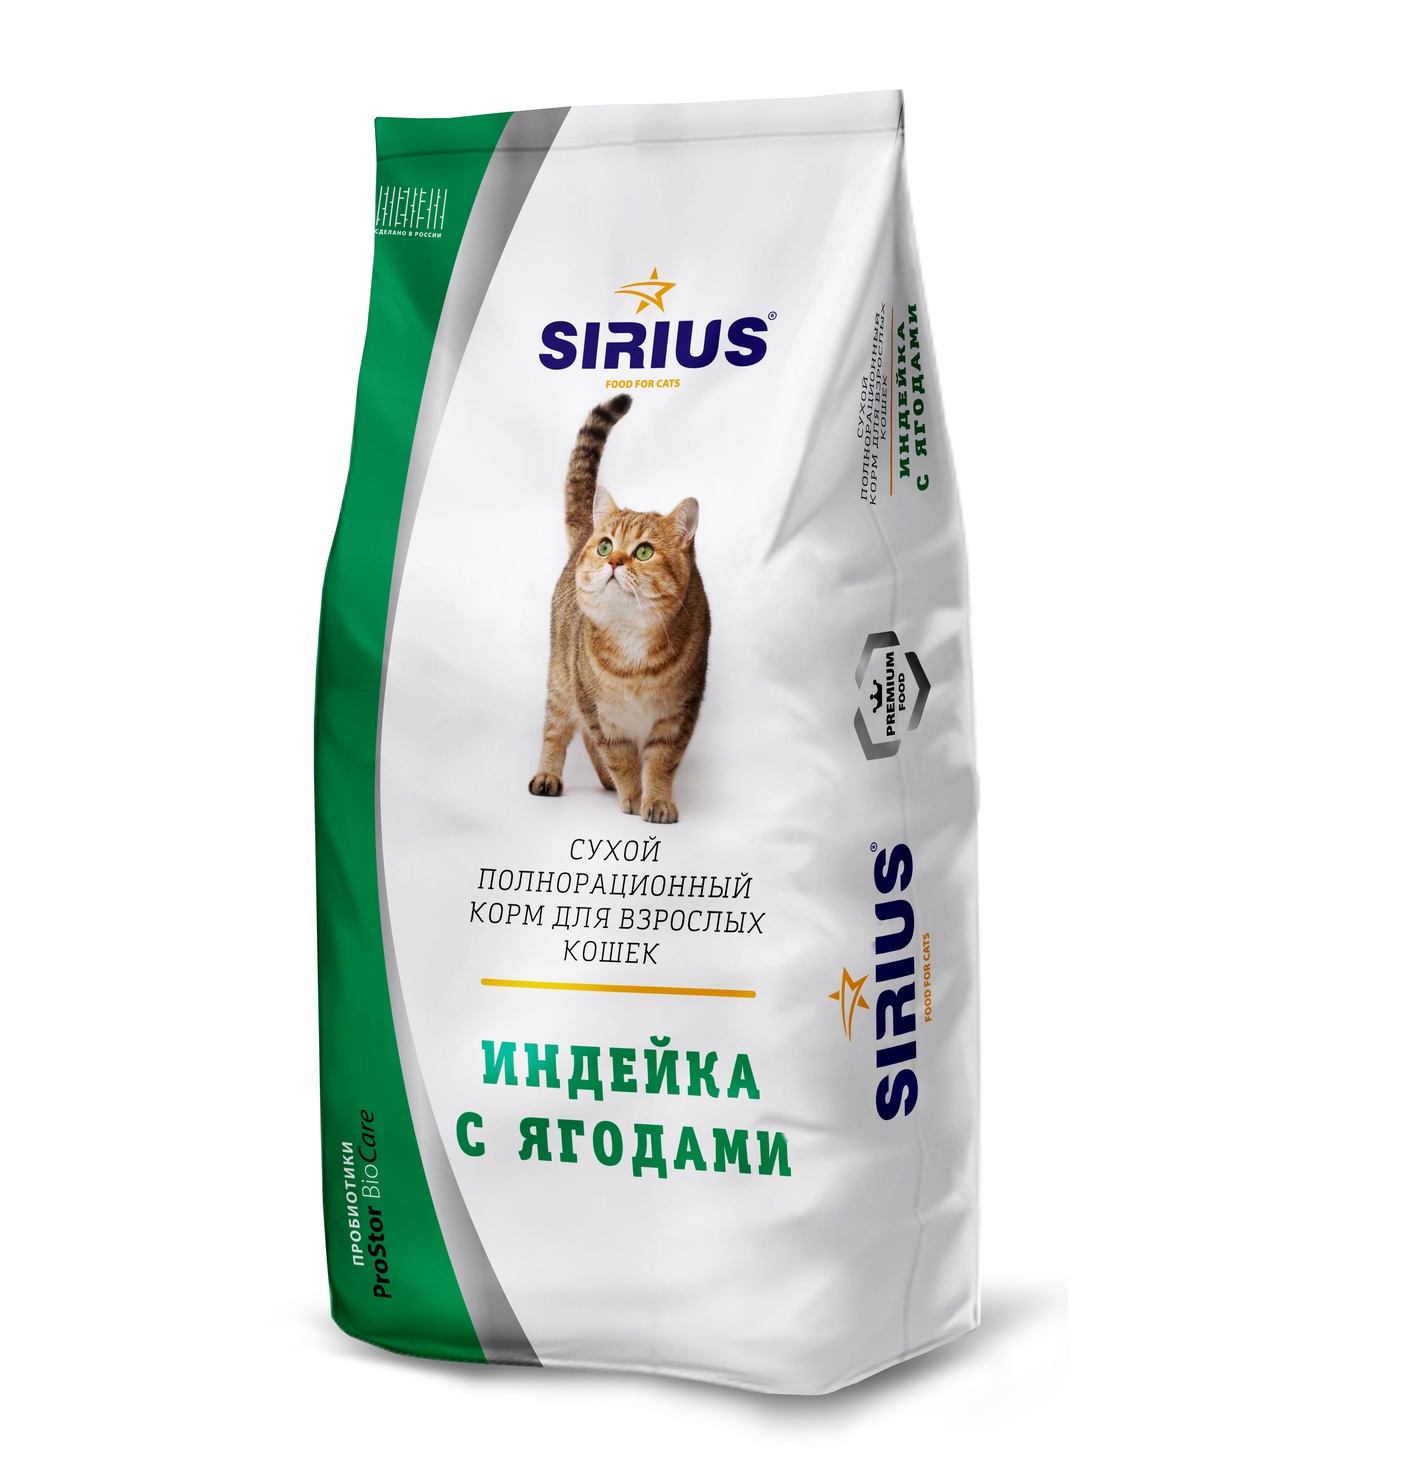 Купить сириус для кошек 10. Сириус корм для кошек 10 кг. Корм Сириус для котят с индейкой. Линейка кормов Сириус для кошек. Корм для кошек сухой премиум Сириус.